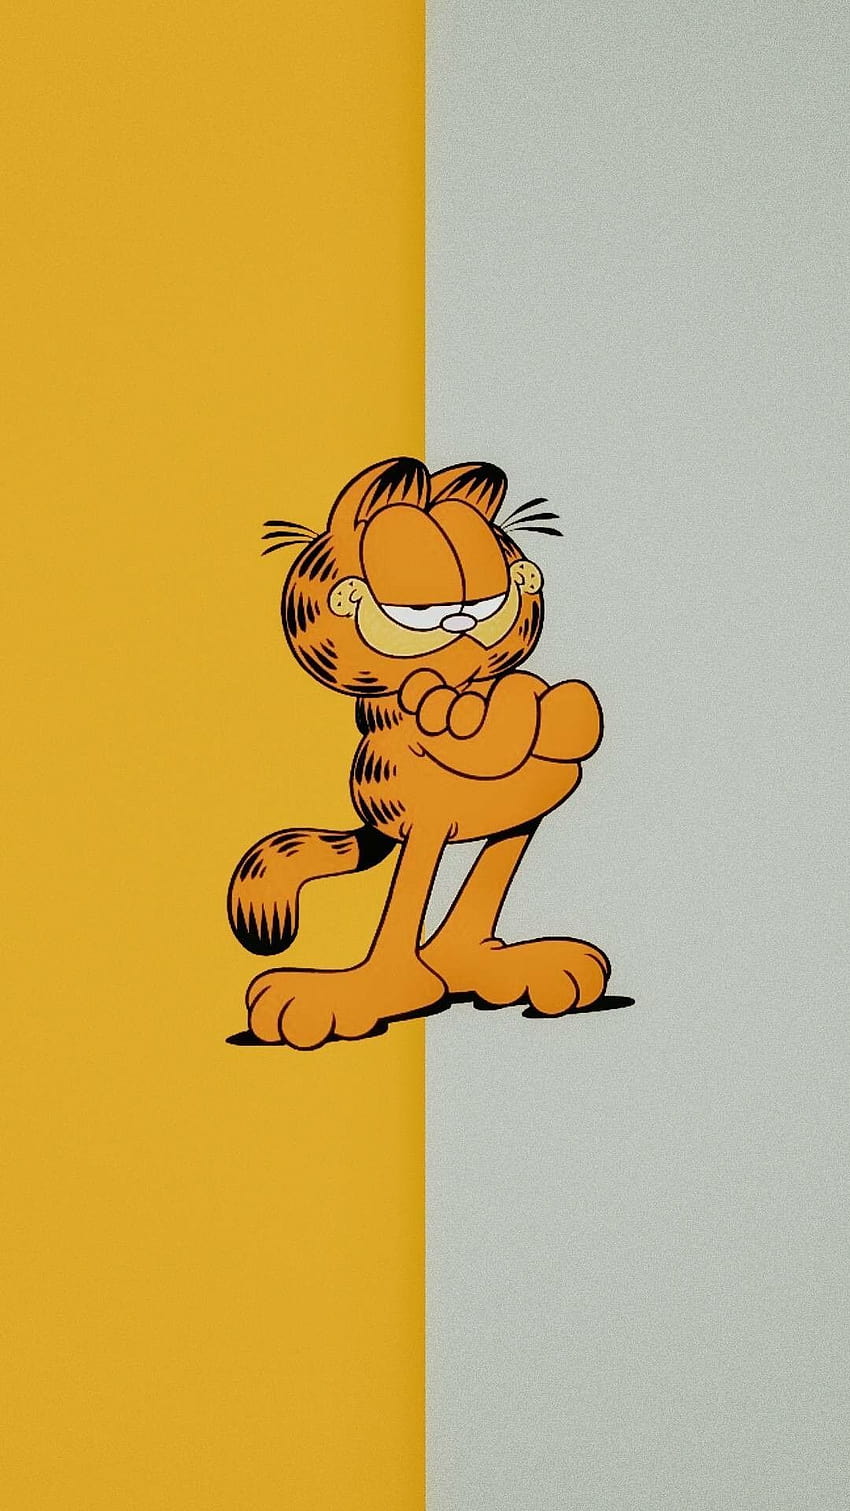 Garfield 3d Anime and cartoons Facebook Cover Maker Fbcoverlover.com